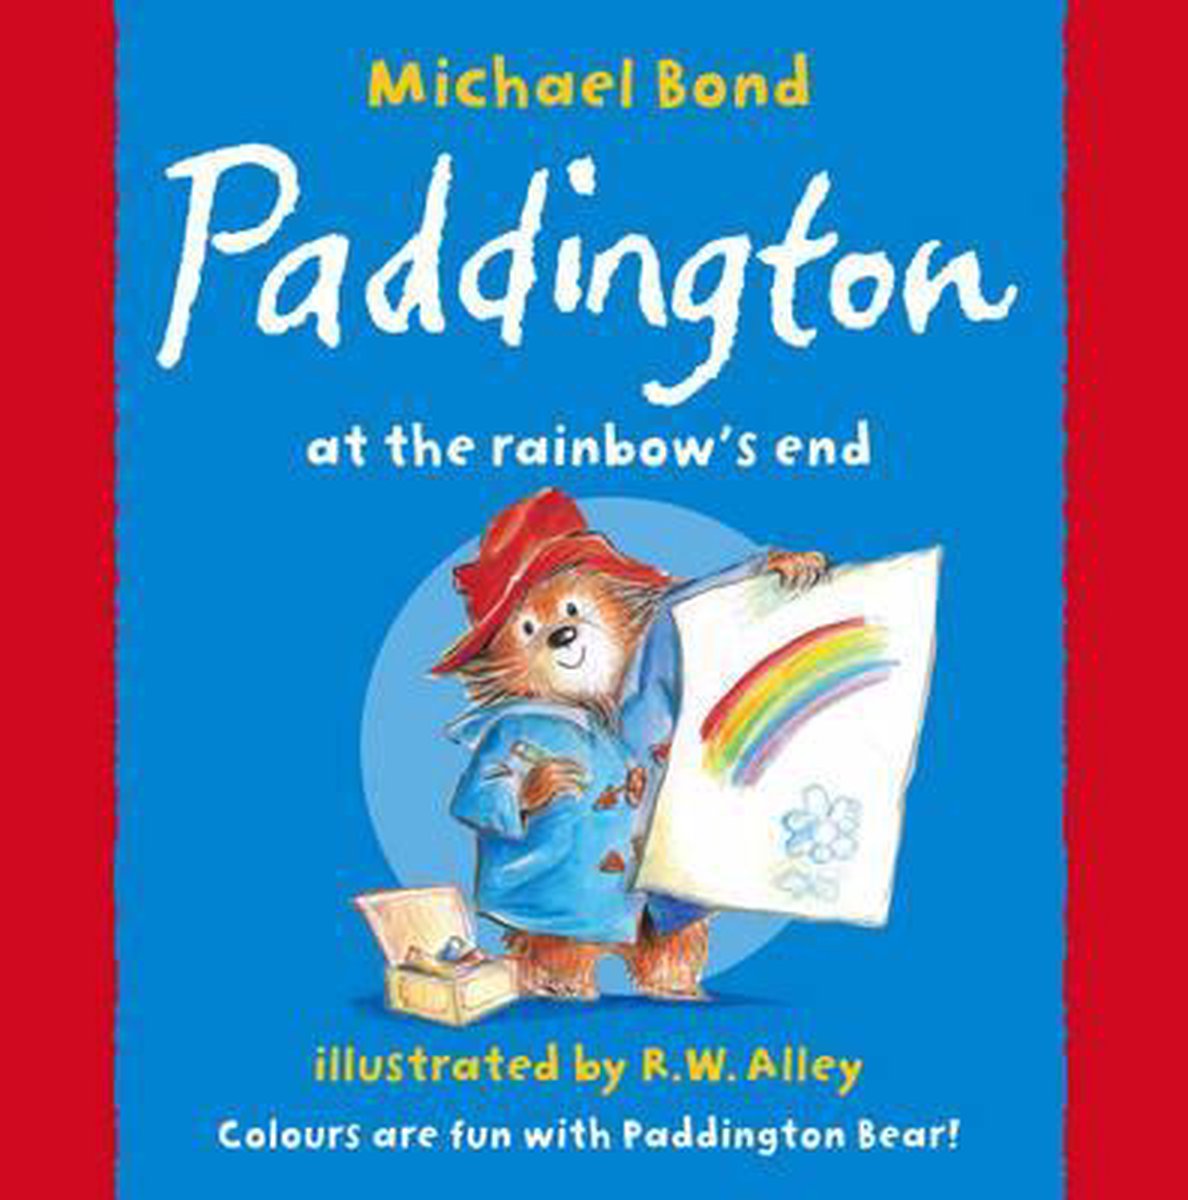 Paddington at the Rainbow's End